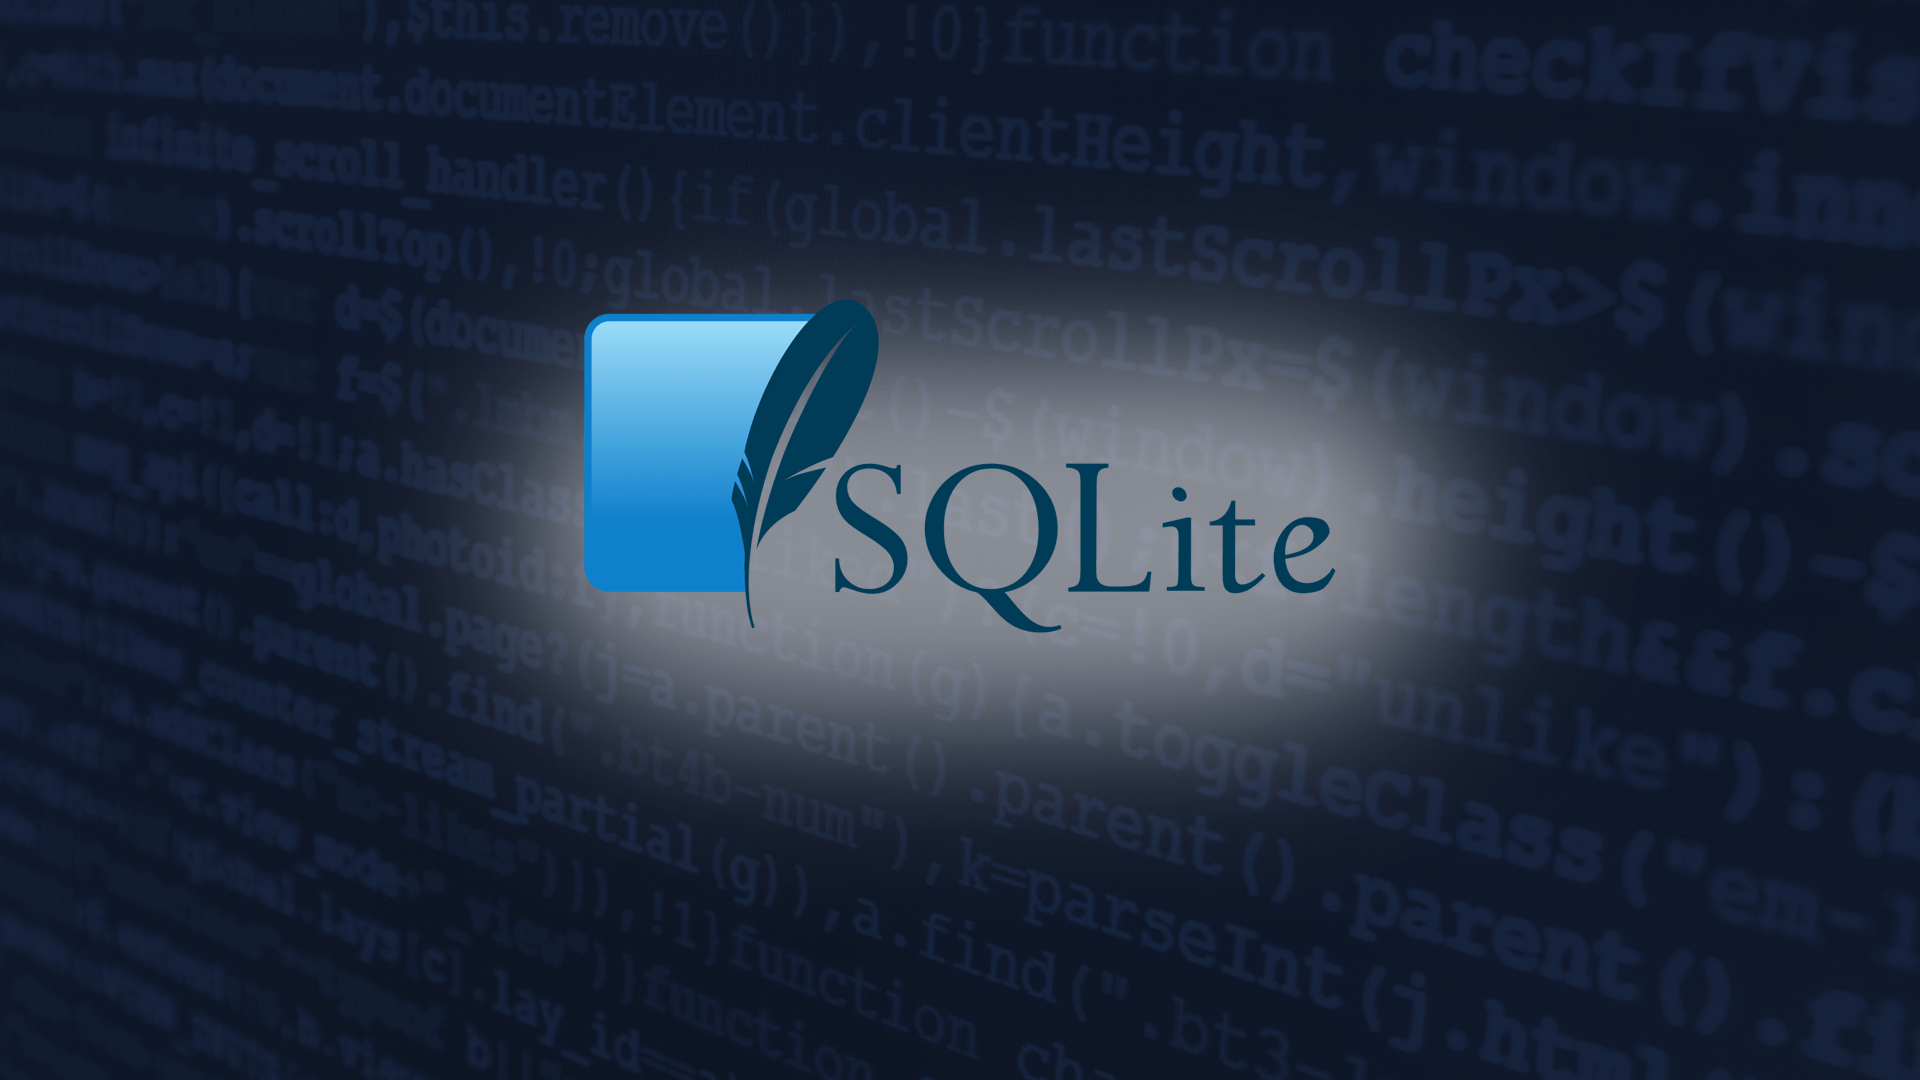 Reportada vulnerabilidad grave que afecta a SQLite